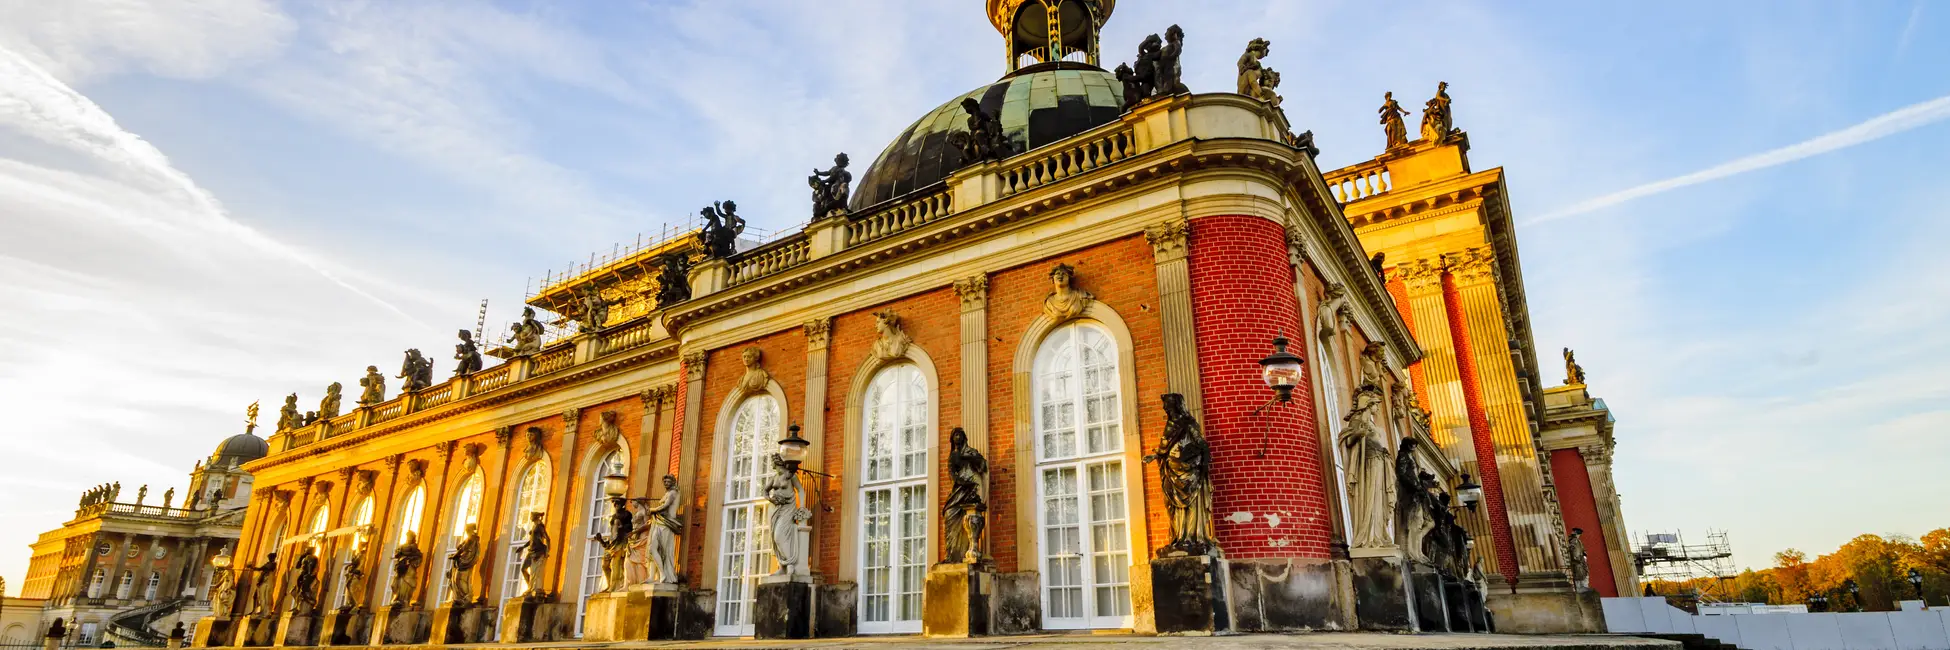 Le palais Sanssouci à Potsdam 